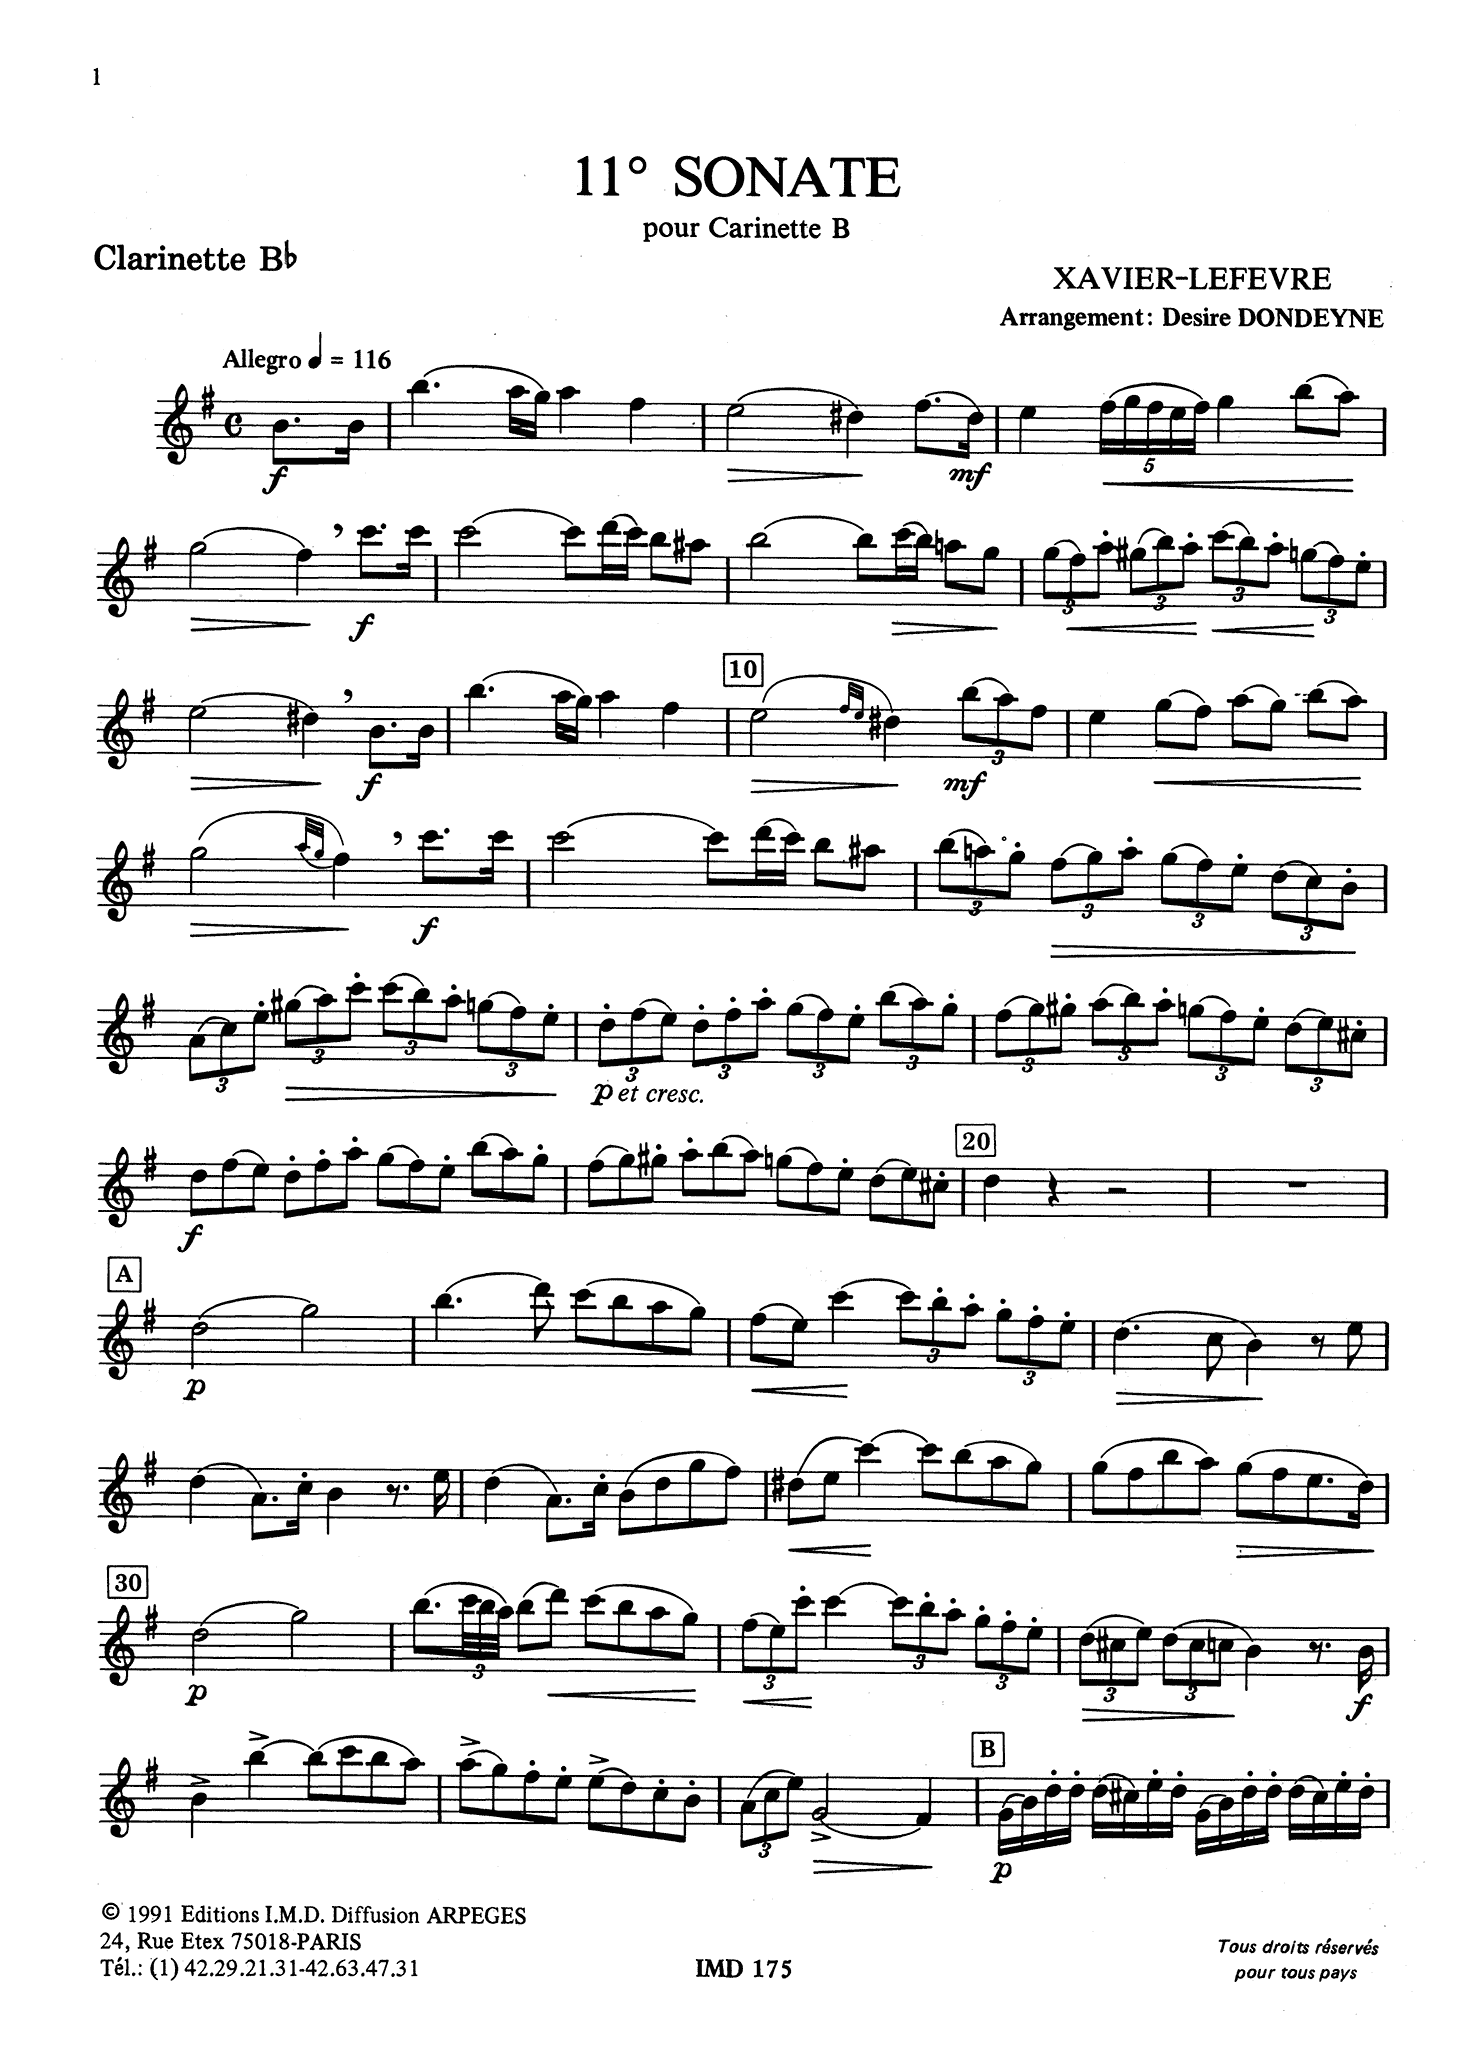 Lefèvre Sonata No. 11 in E Minor Clarinet part